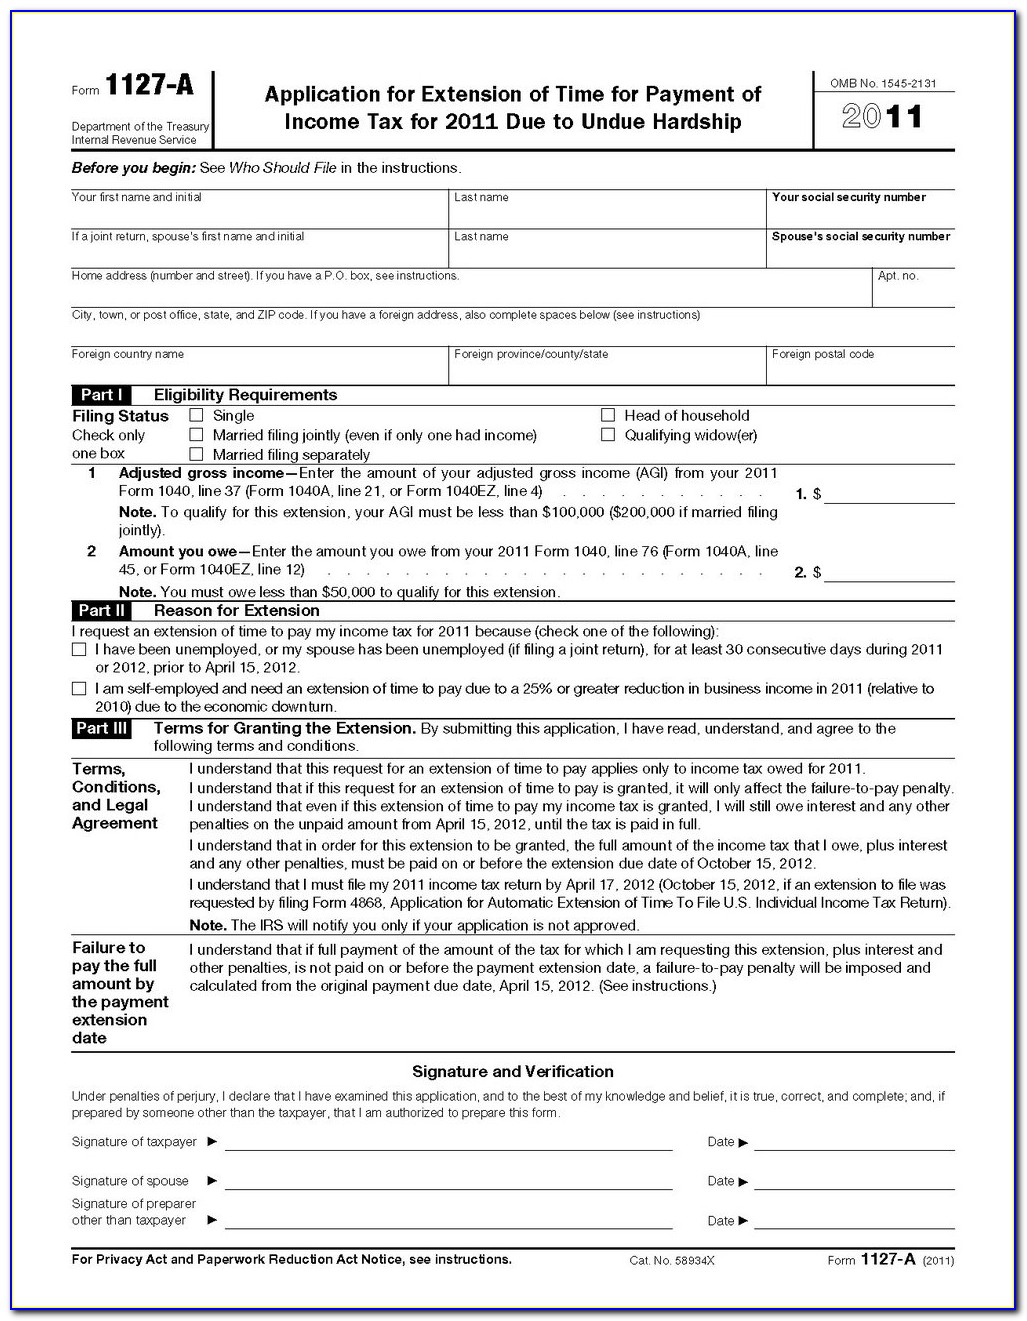 1040ez Tax Form Instructions